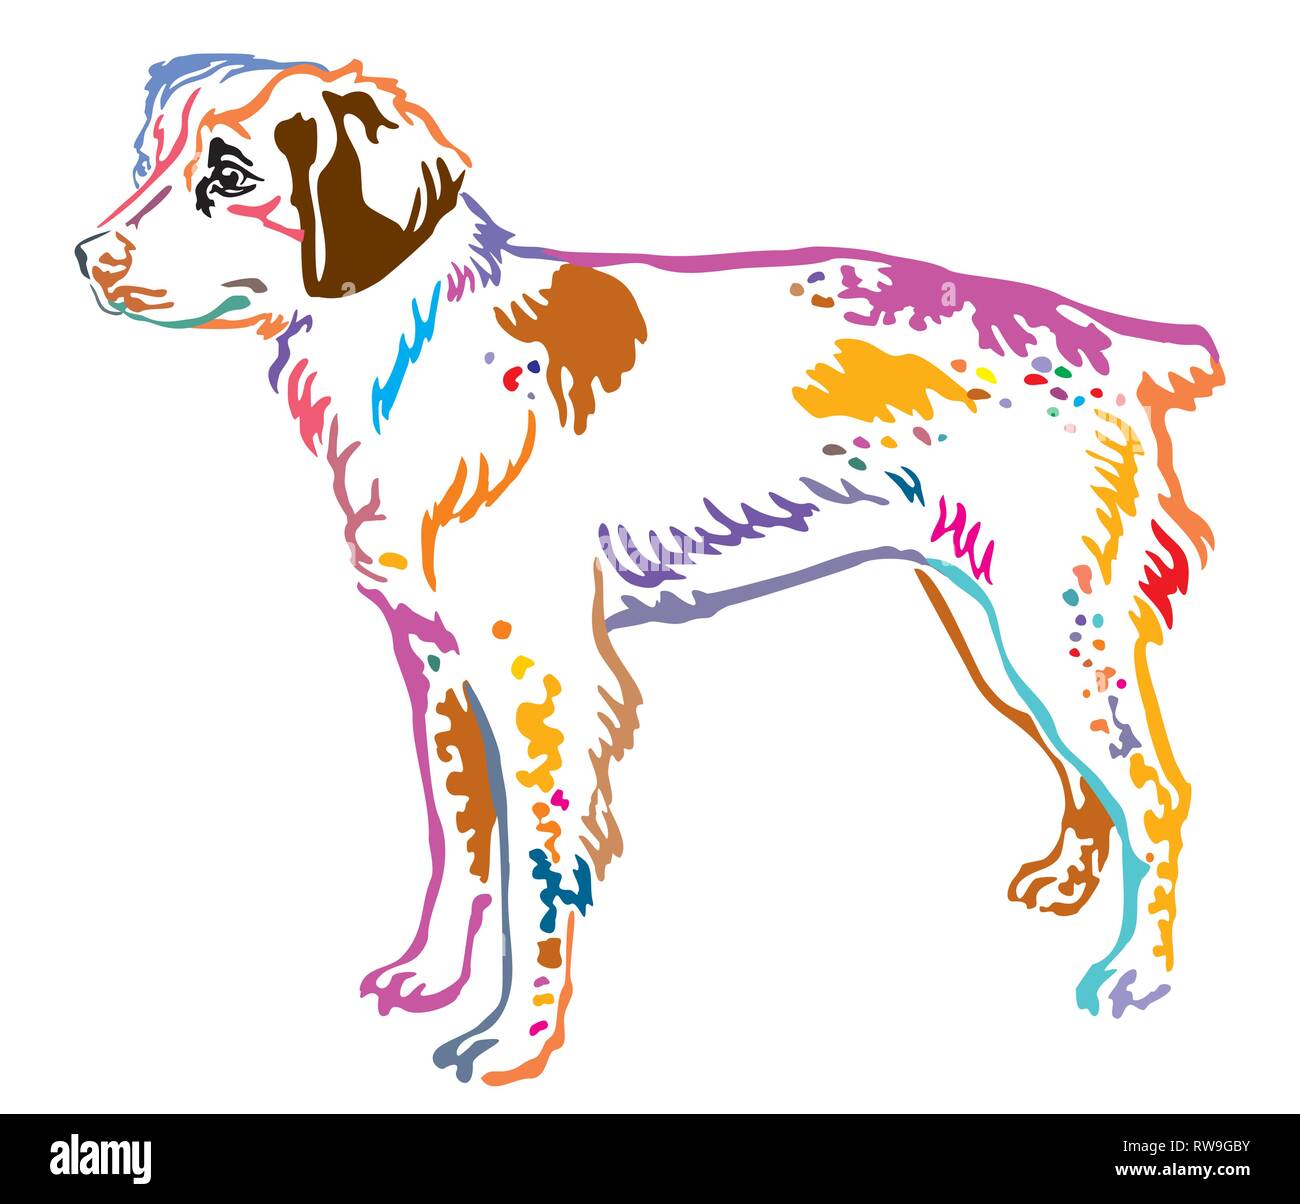 Contour coloré de l'article portrait de décoration en Bretagne Profil de chien, vector illustration isolé sur fond blanc Illustration de Vecteur